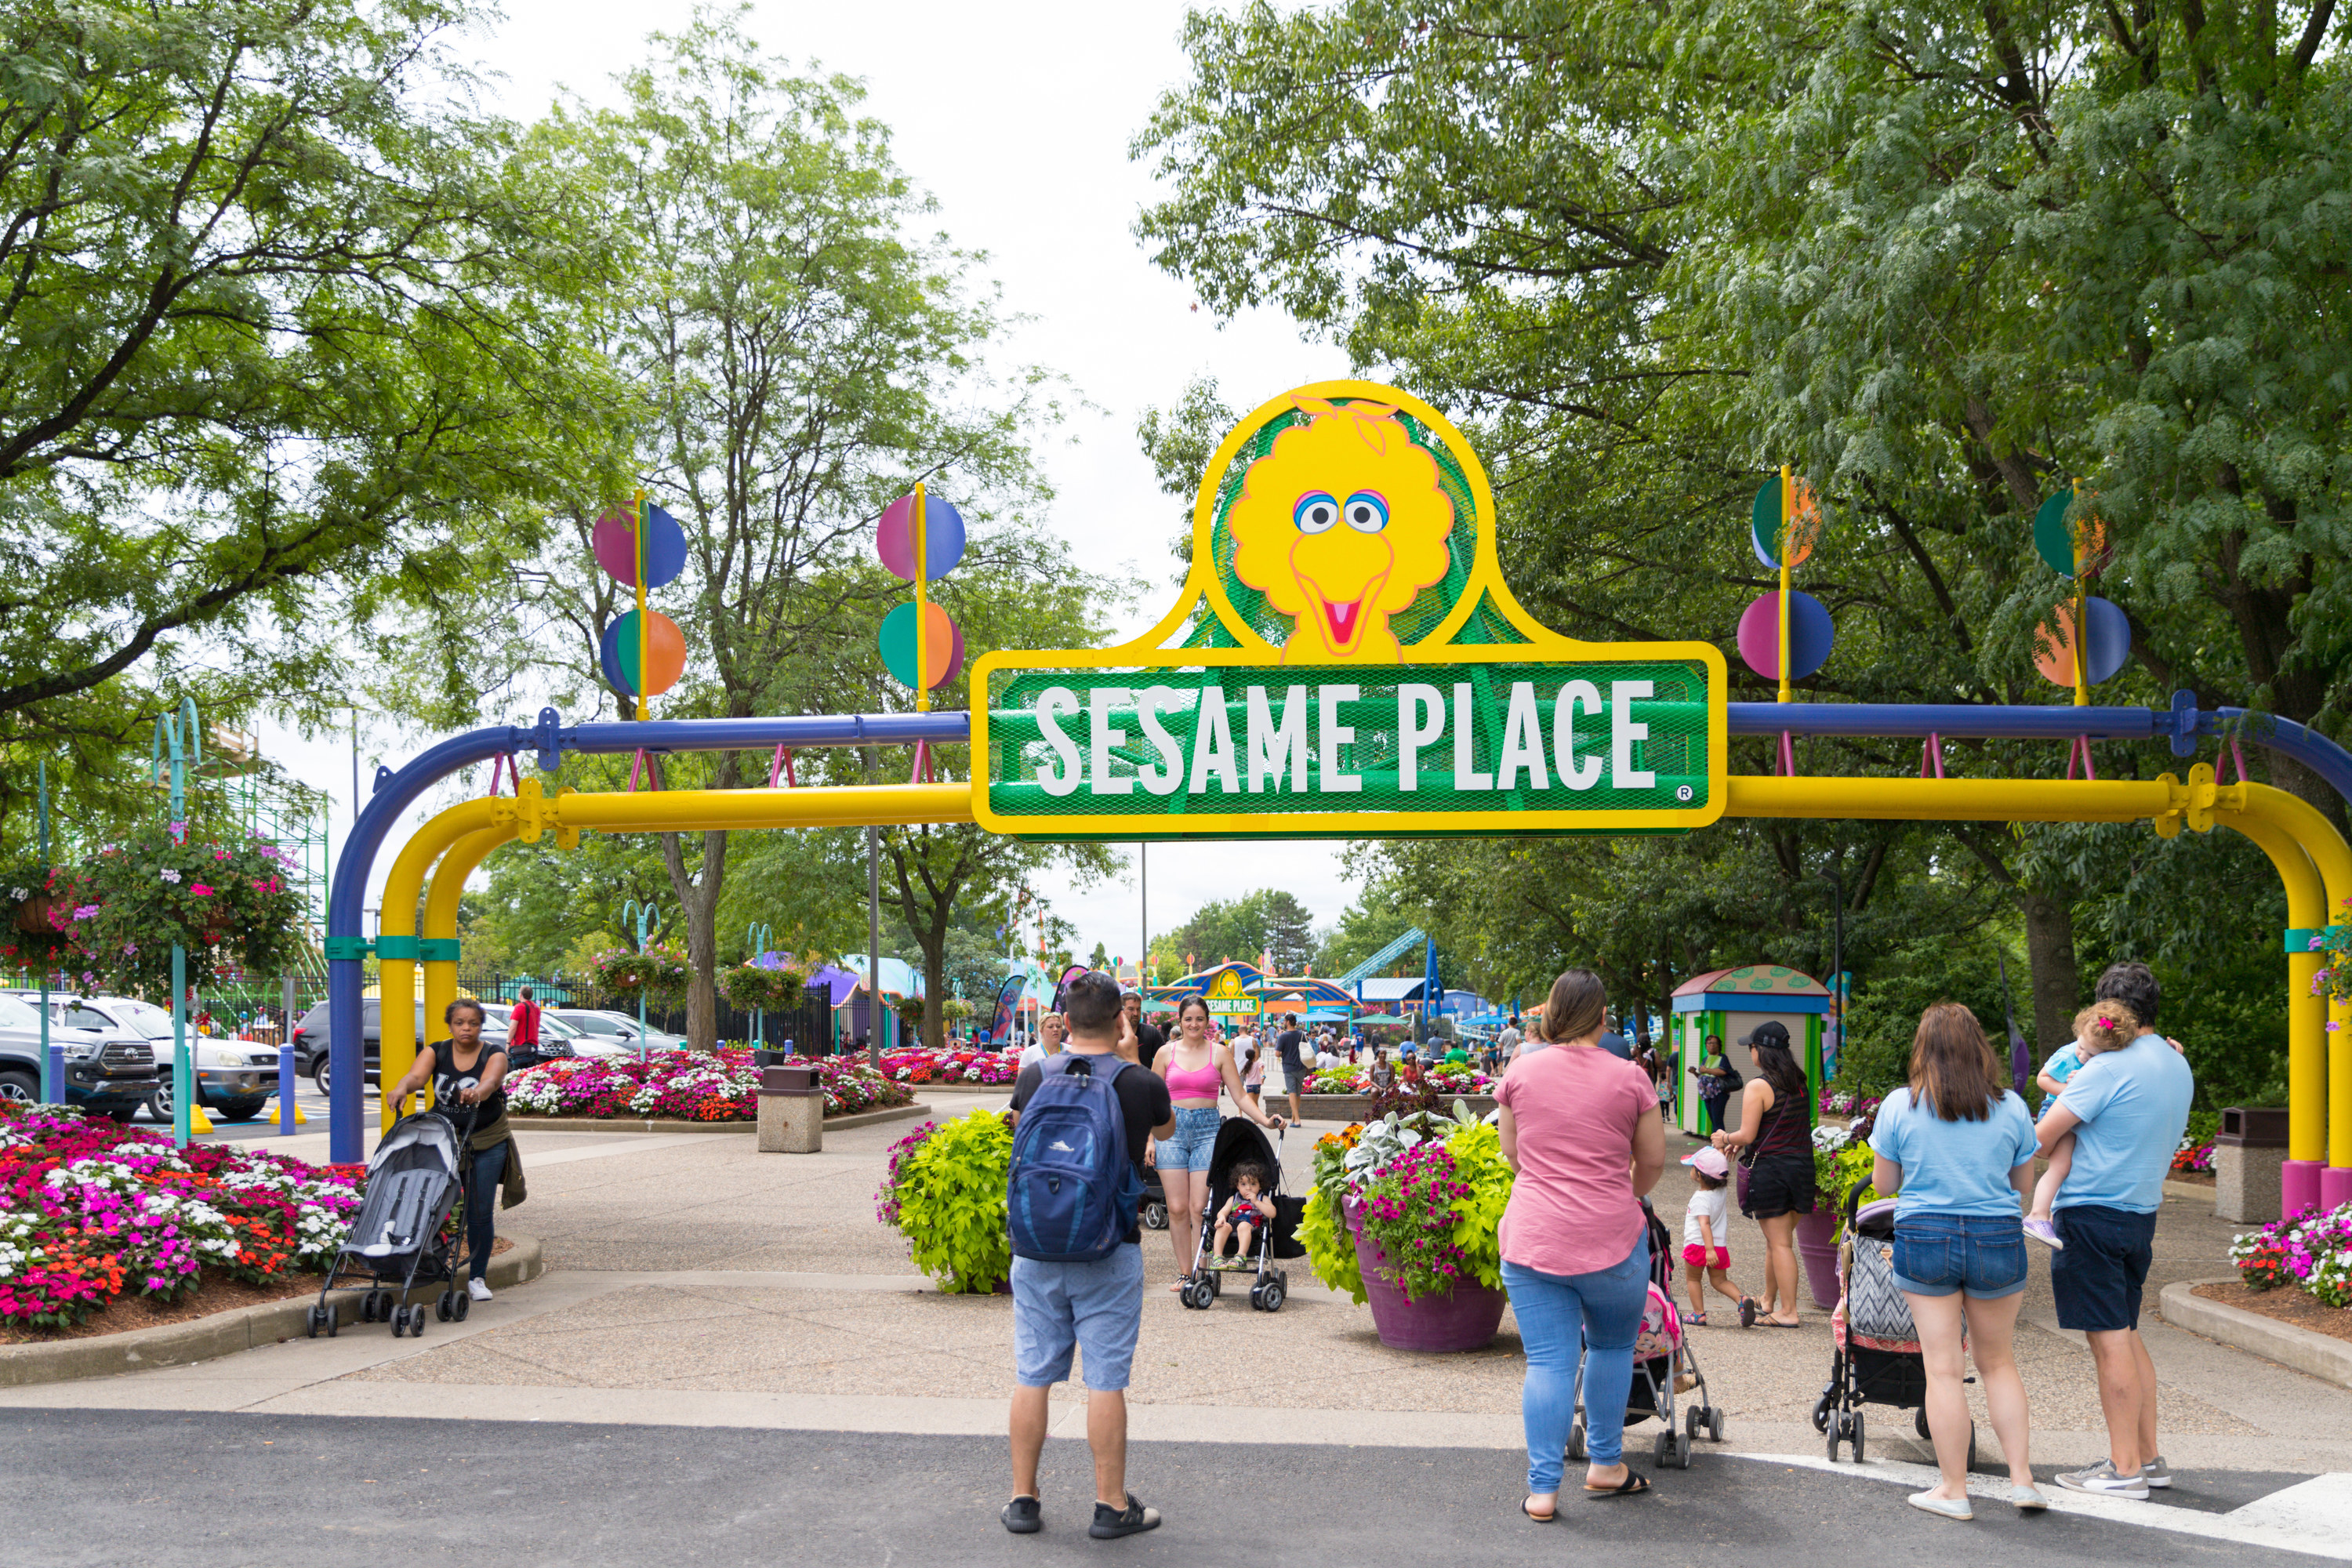 The theme park entrance